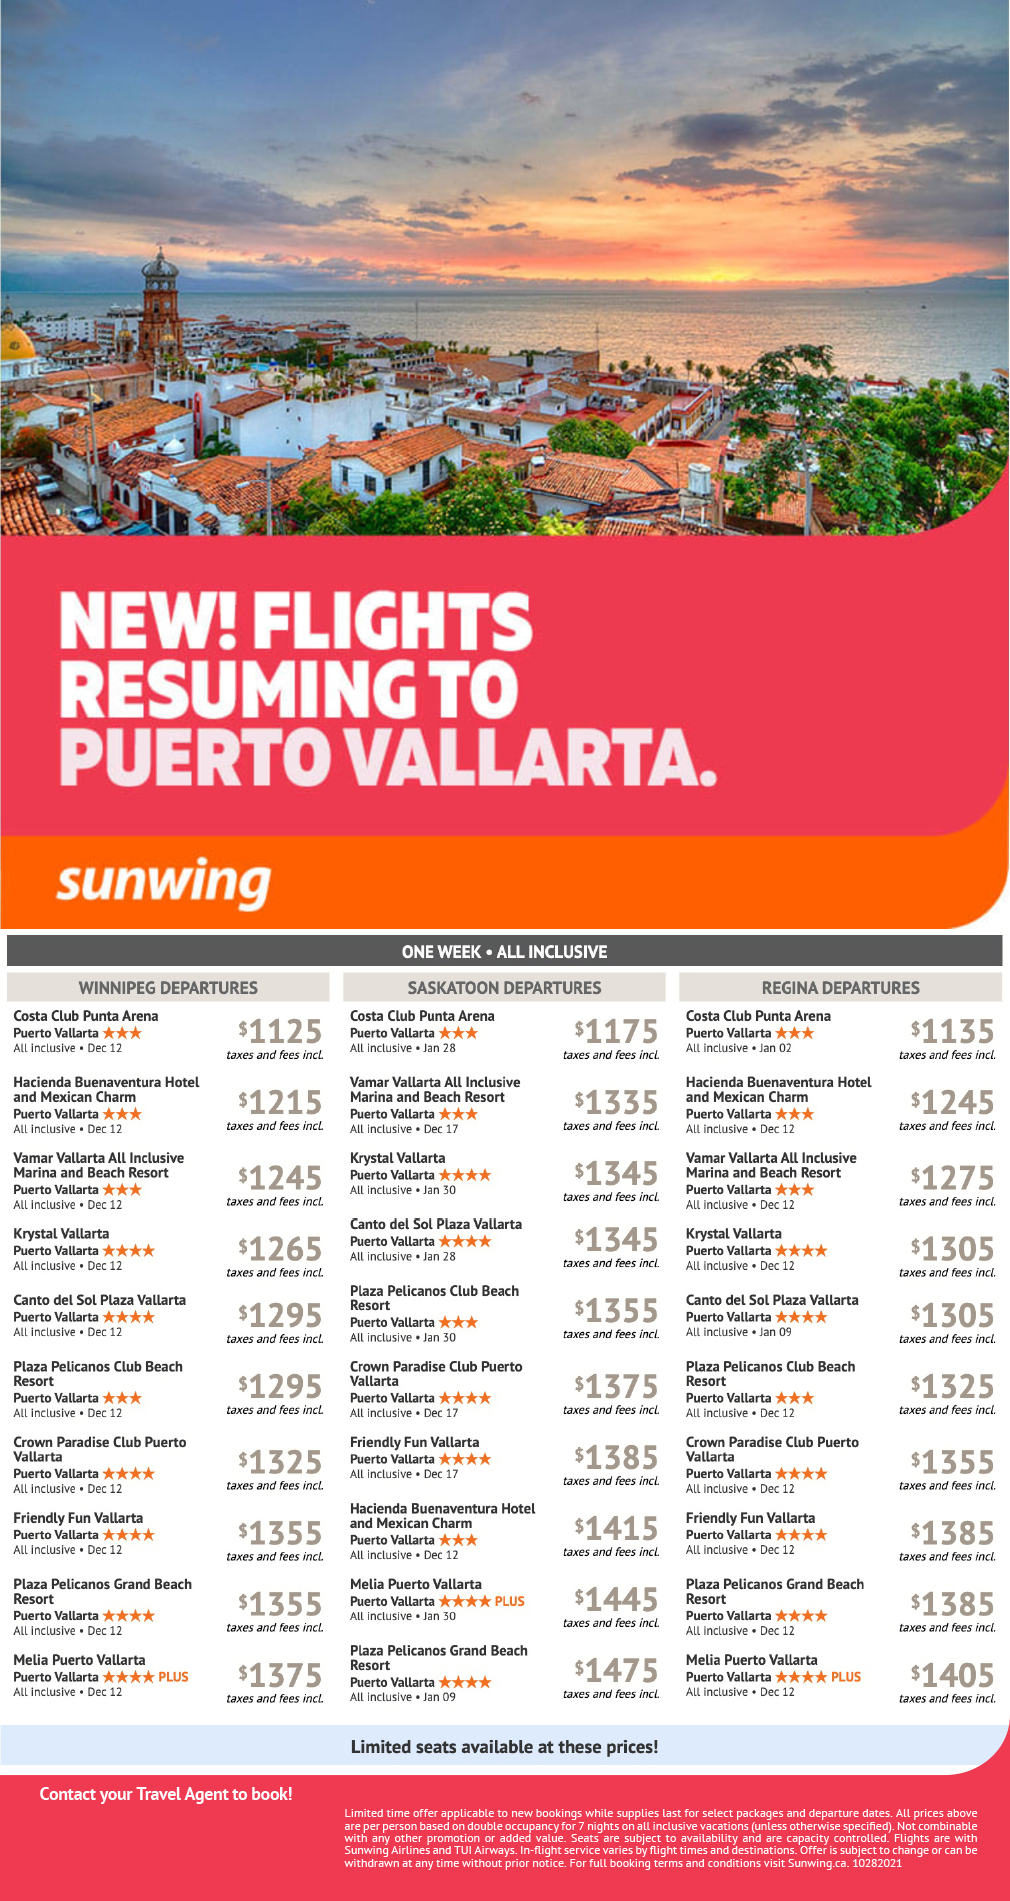 NEW! Flights Resuming To Puerto Vallarta